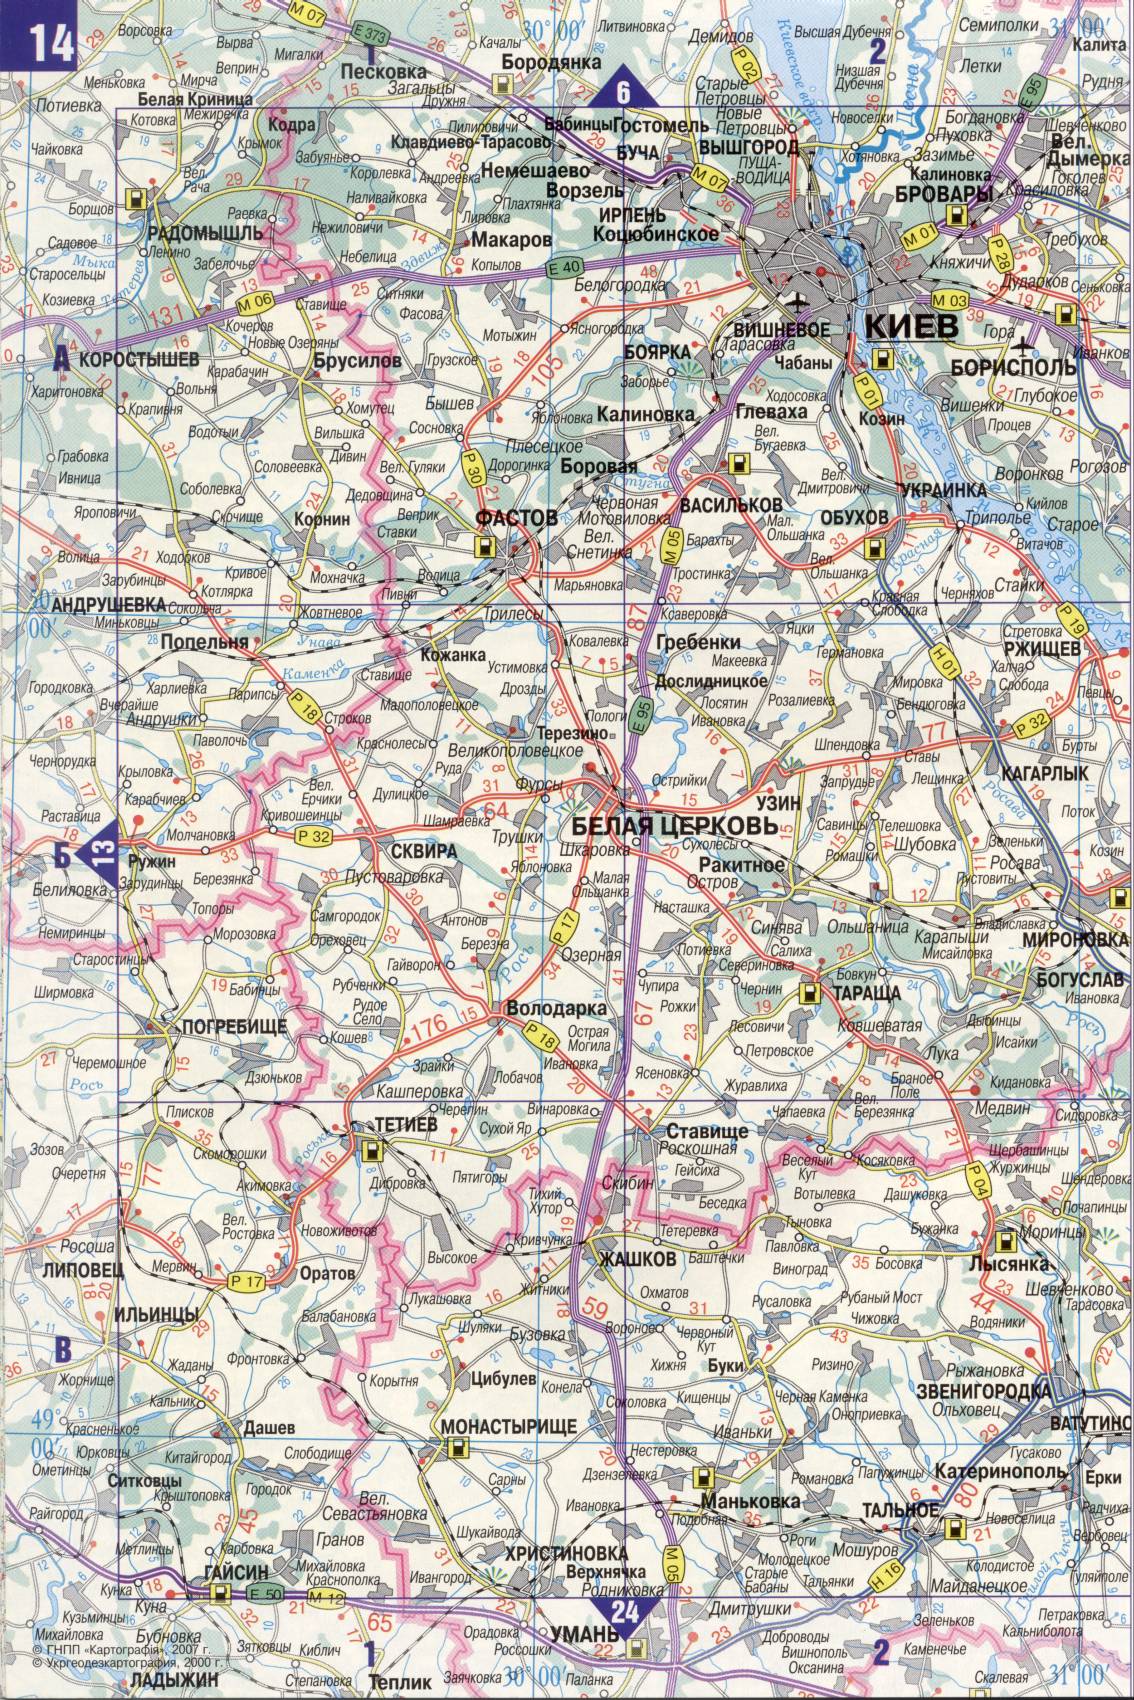 Карта Украины. Подробная карта дорог Украина из автомобильног атласа. скачать бесплатно, E1